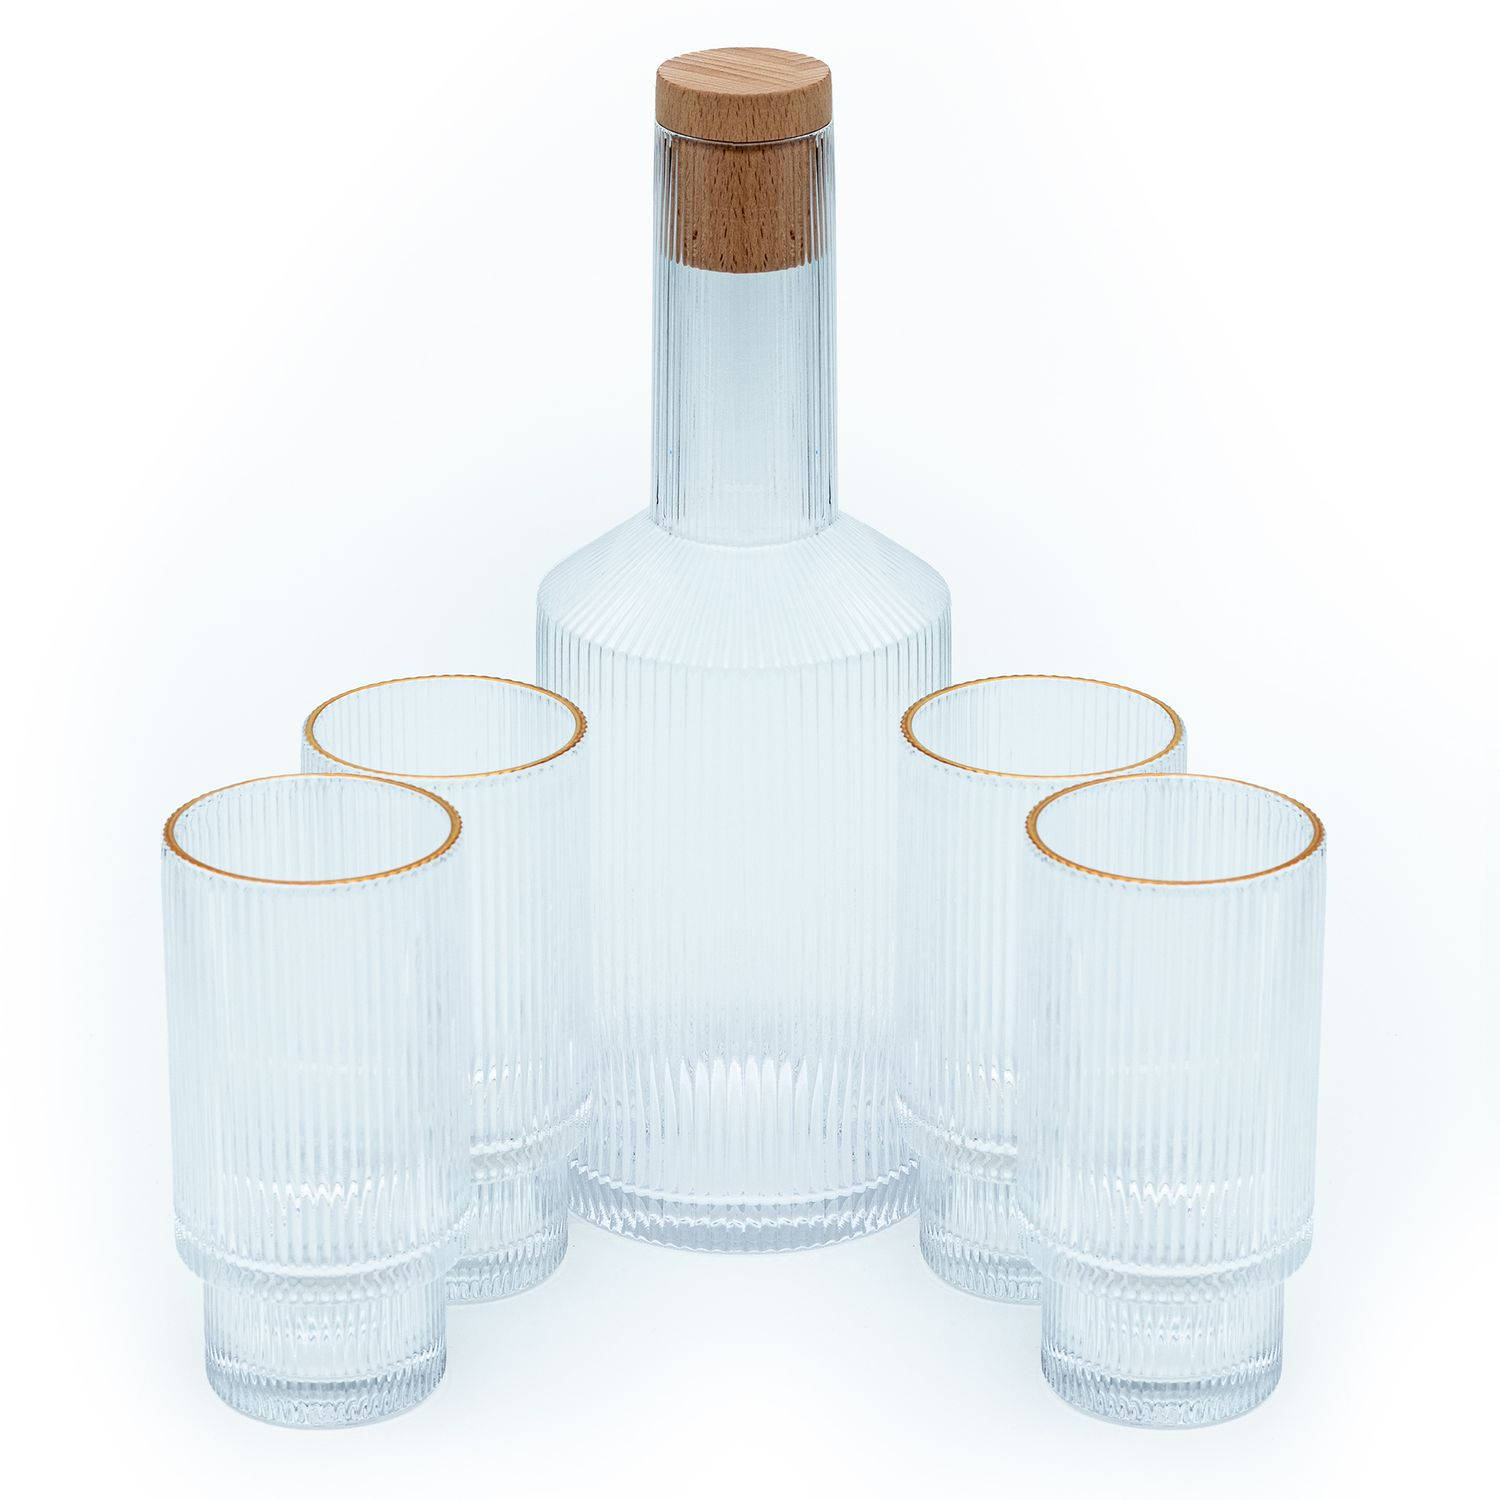 Intirilife glazen karaf set karaf met kurk en 4 glazen met gouden rand - karaf inhoud 1,7 liter - glazen inhoud 260 ml